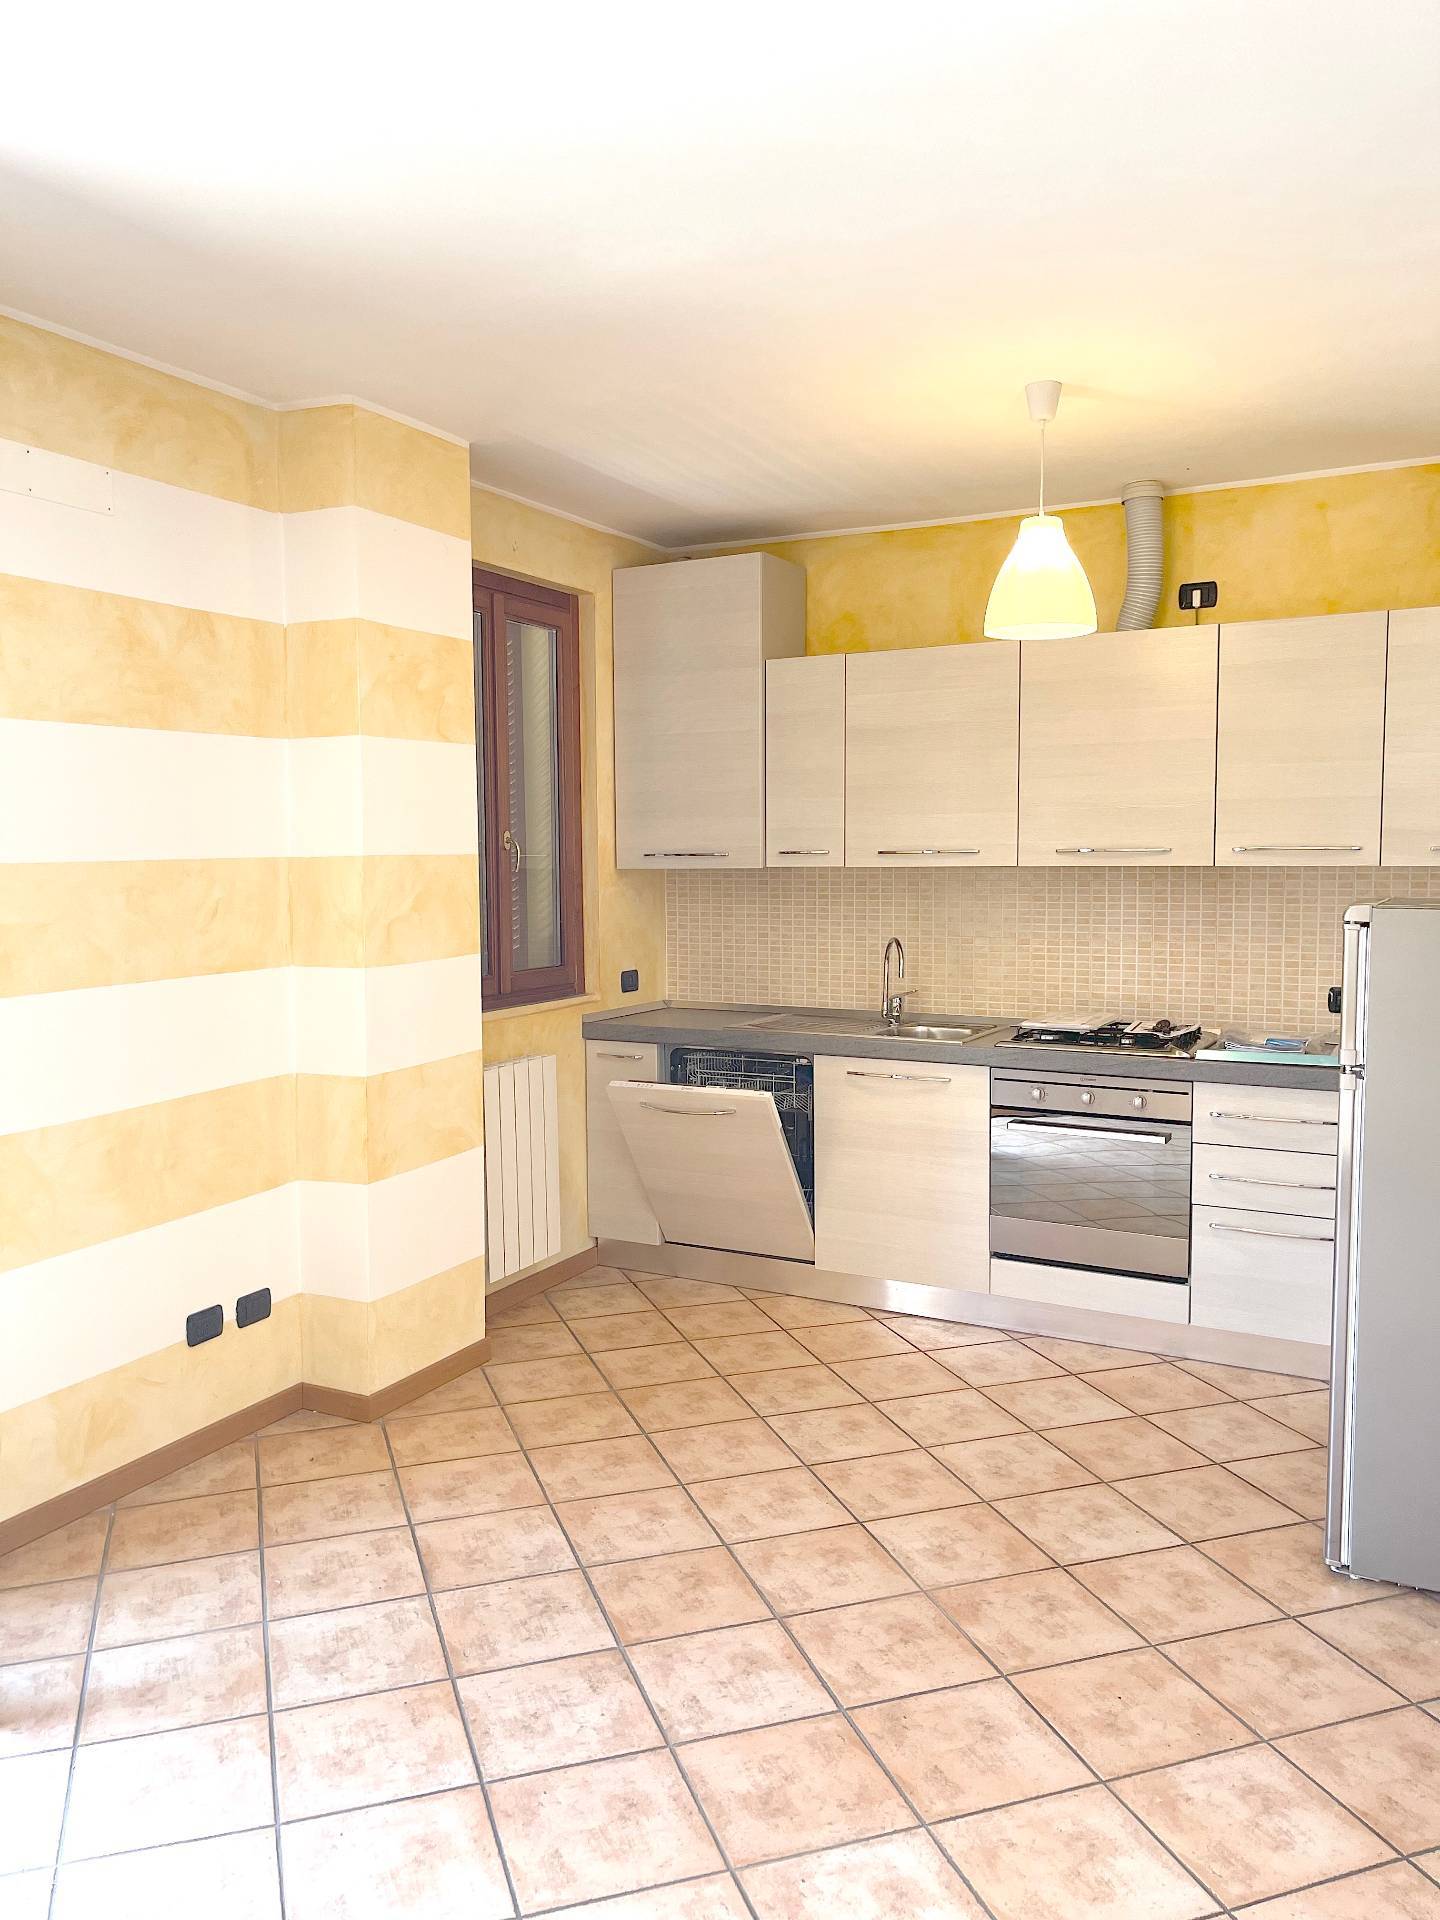 Appartamento in affitto a Bonate Sotto, 3 locali, prezzo € 595 | CambioCasa.it